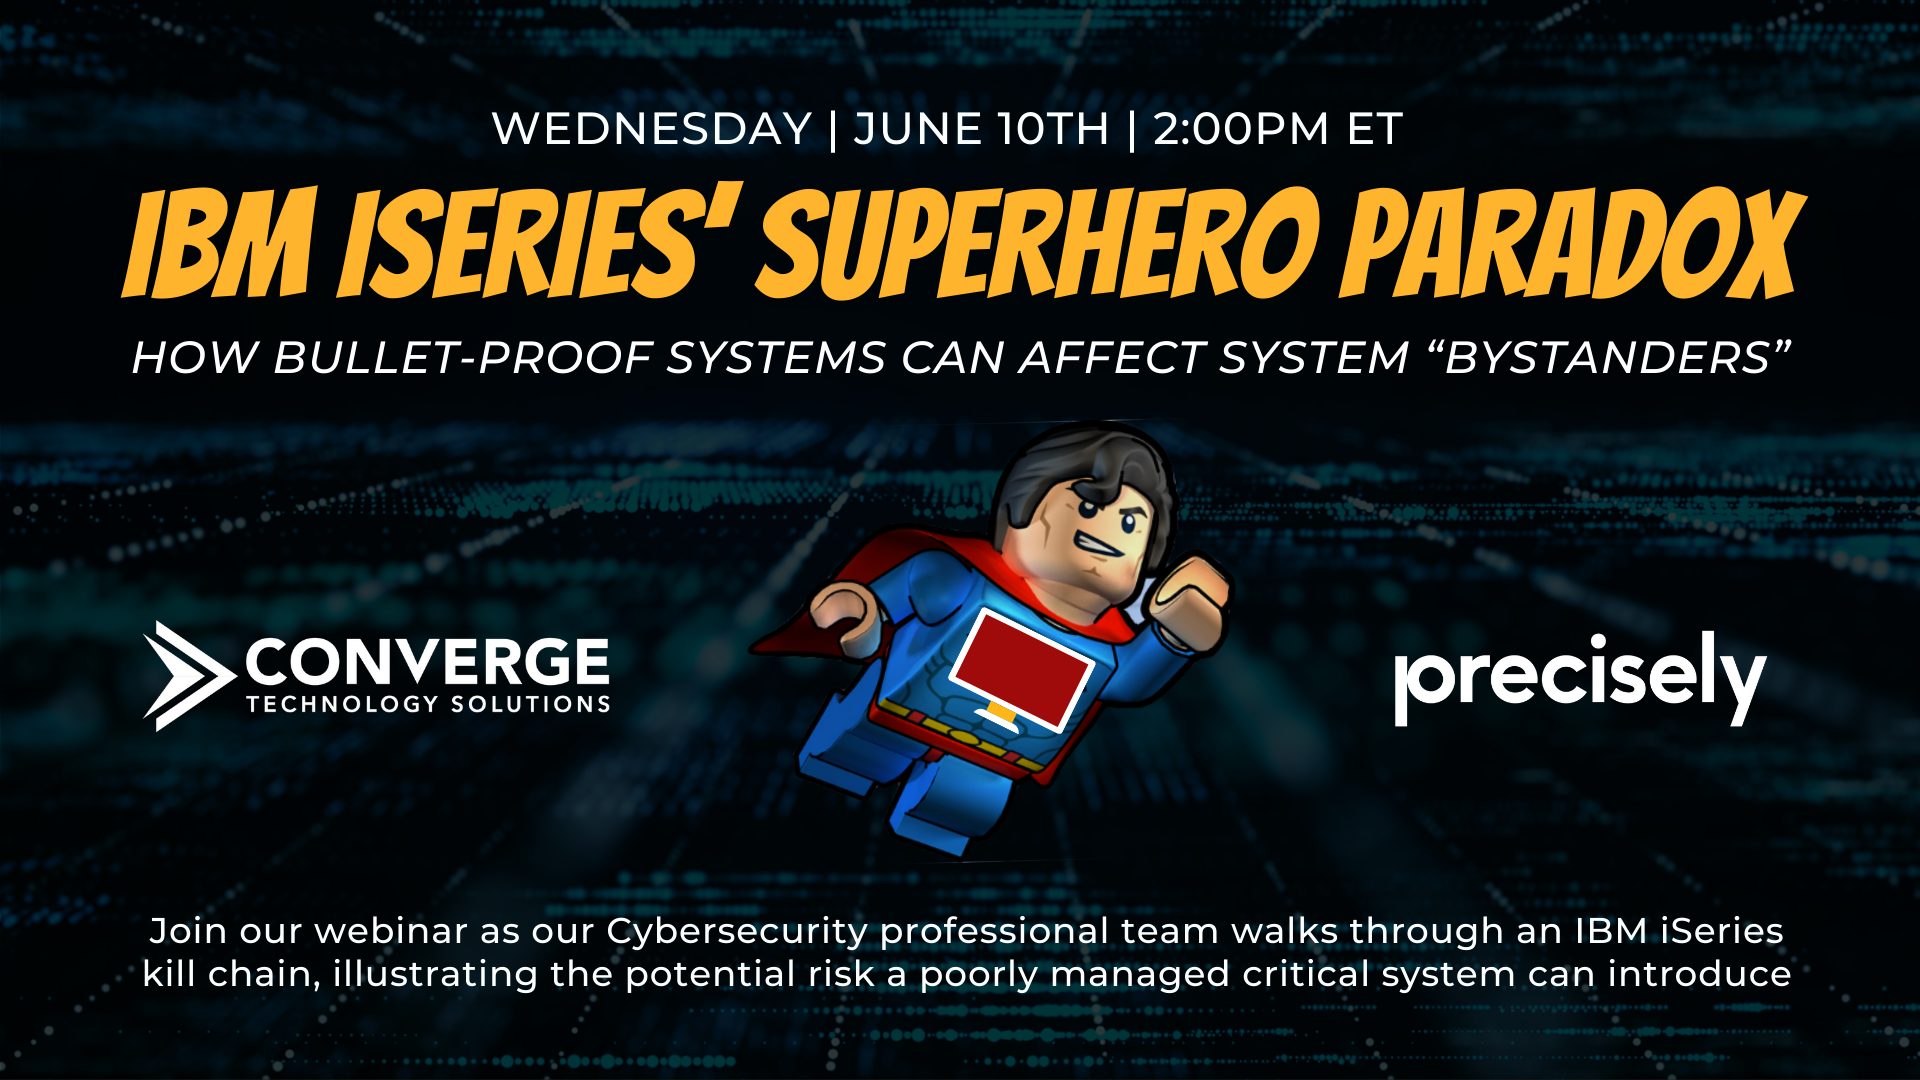 IBM iSeries’ Superhero Paradox